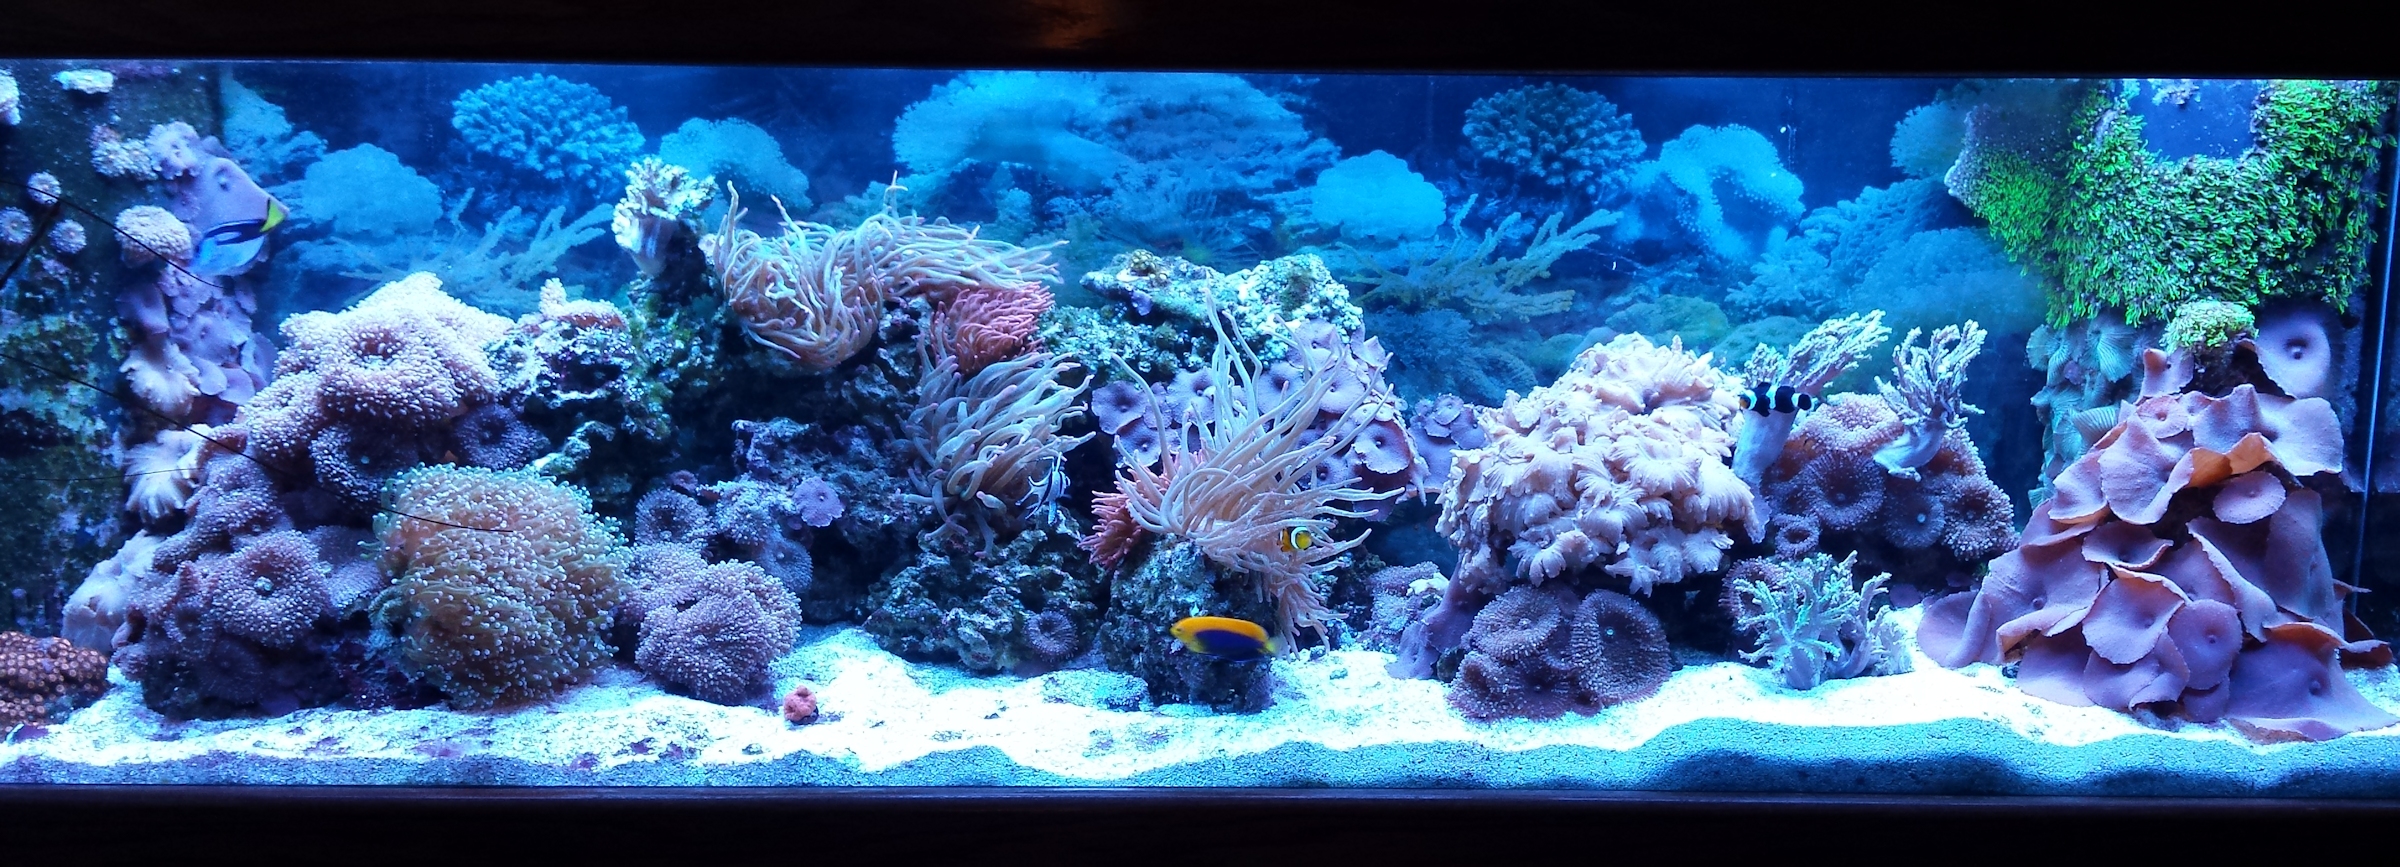 Mushroom coral aquarium